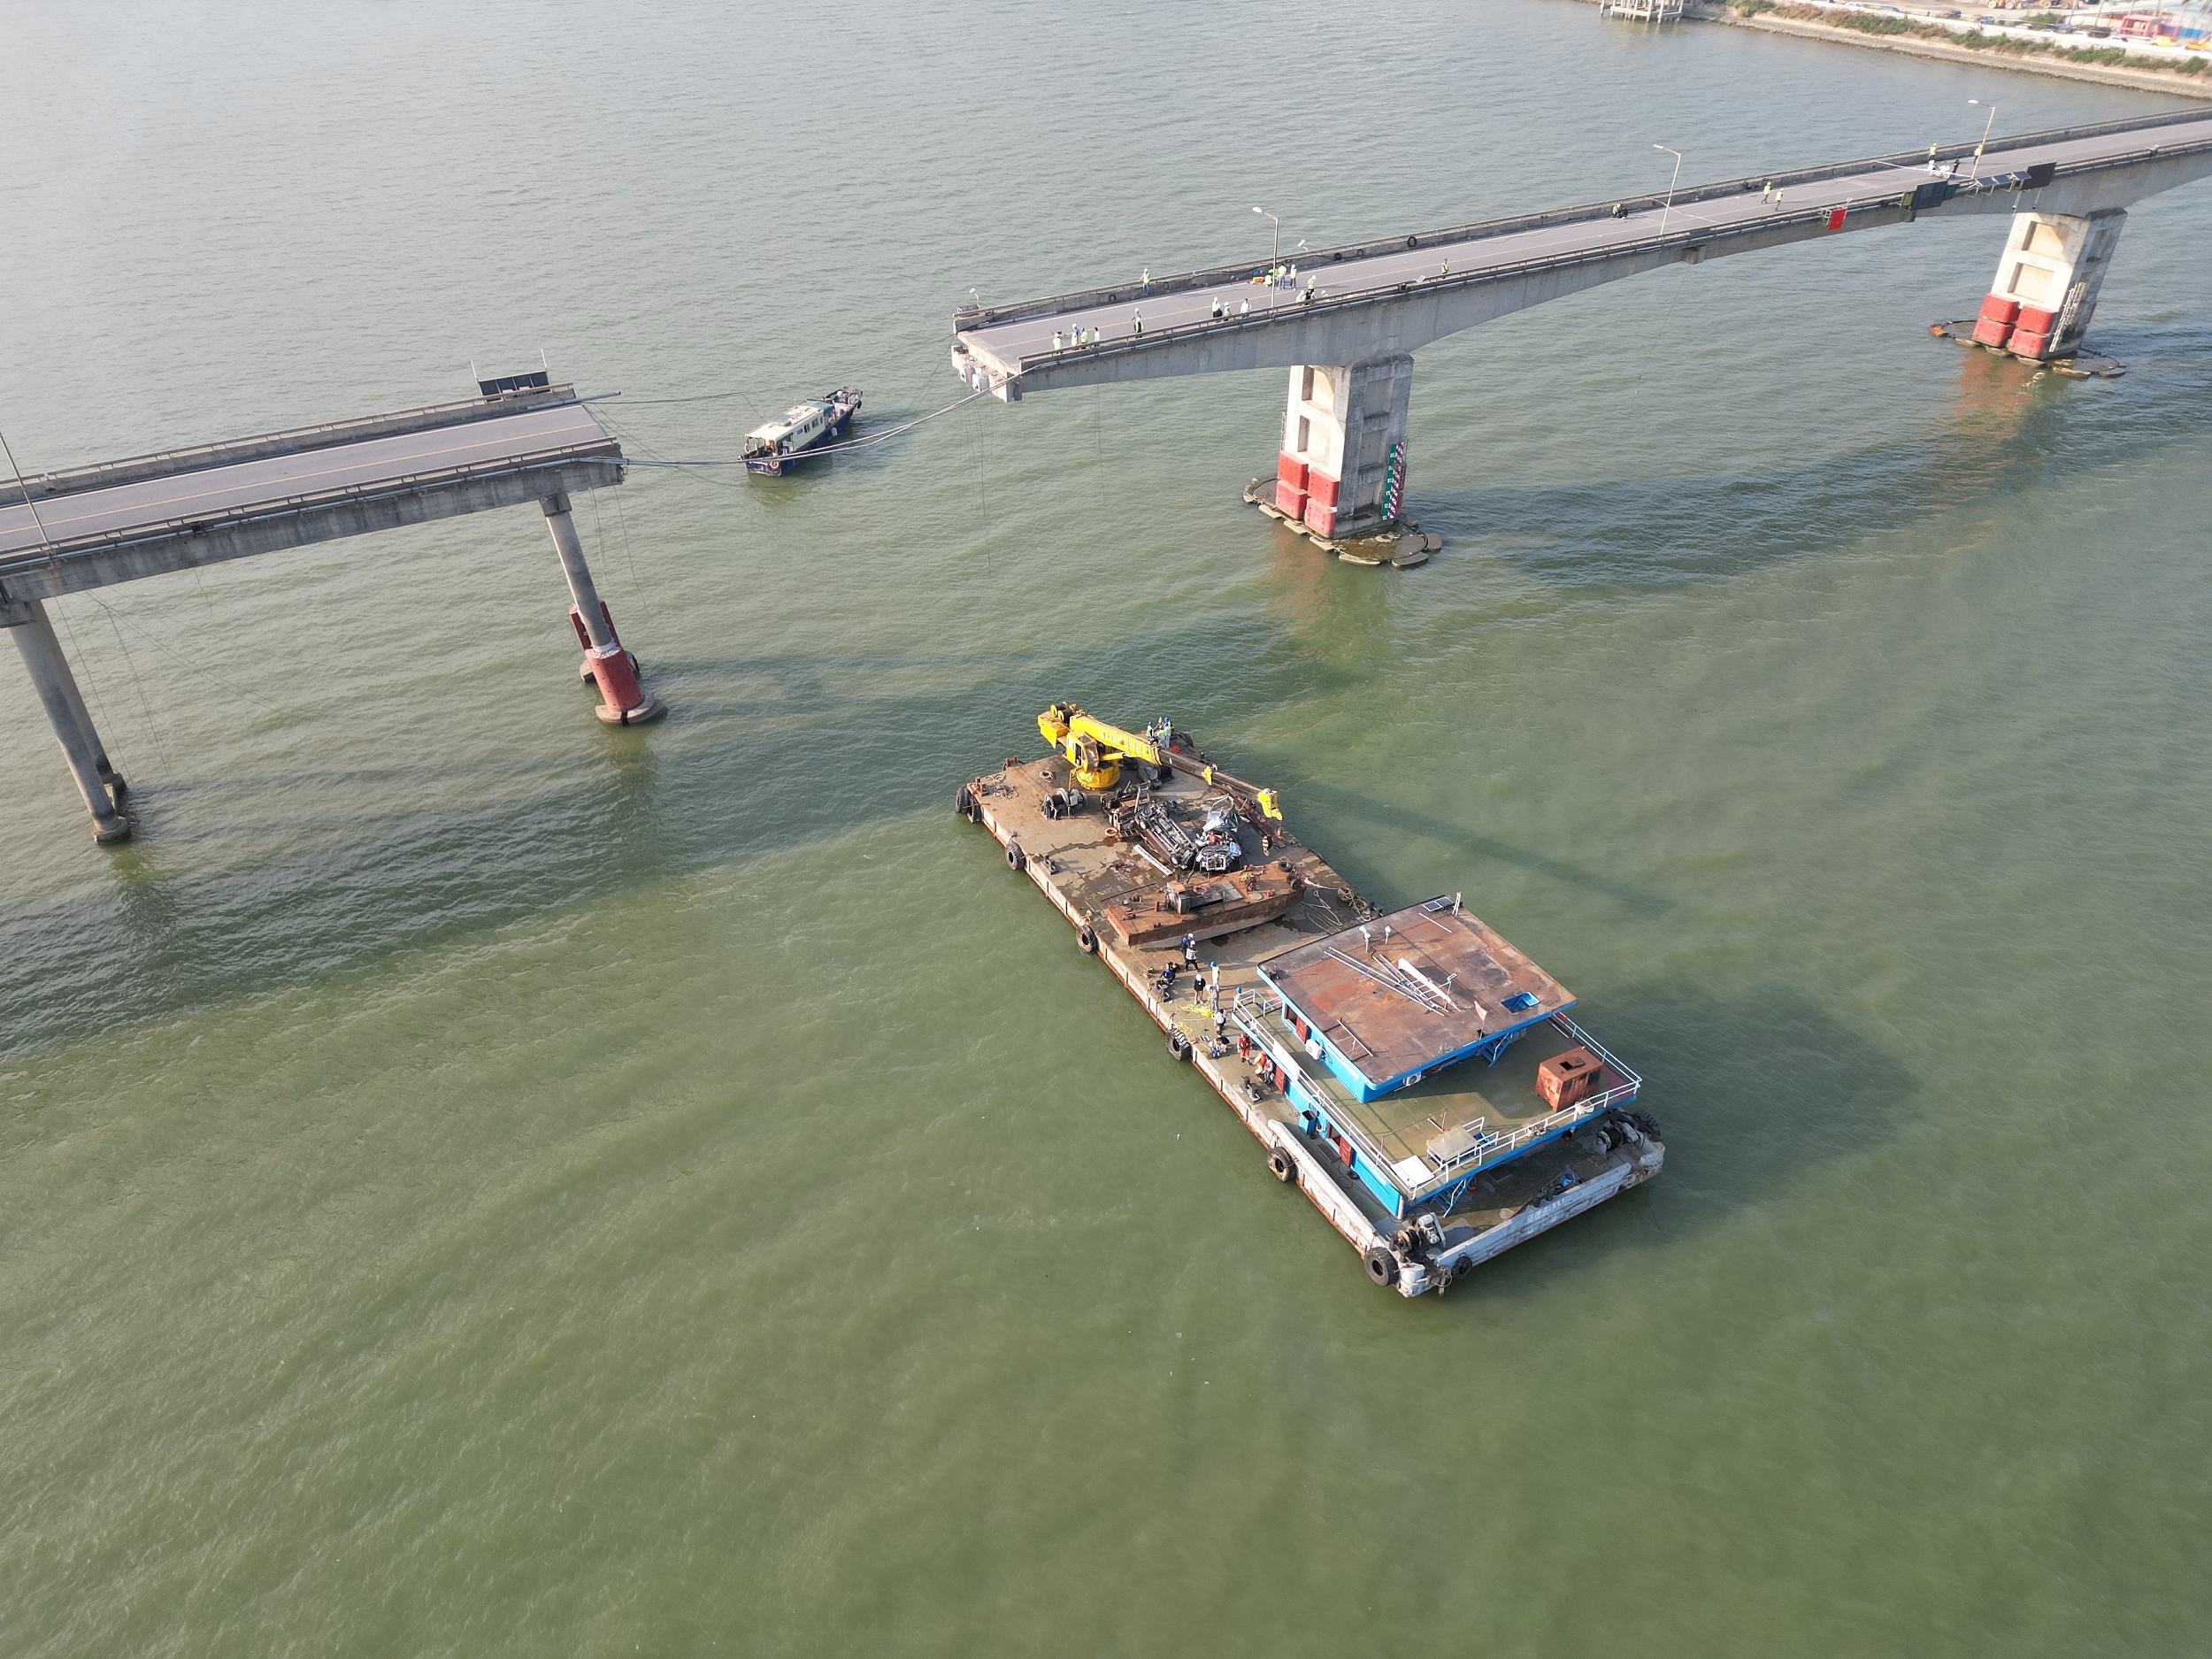 广州南沙沥心沙大桥被船只撞断 防撞能力加固提升工程曾三次延期 - 西部网（陕西新闻网）